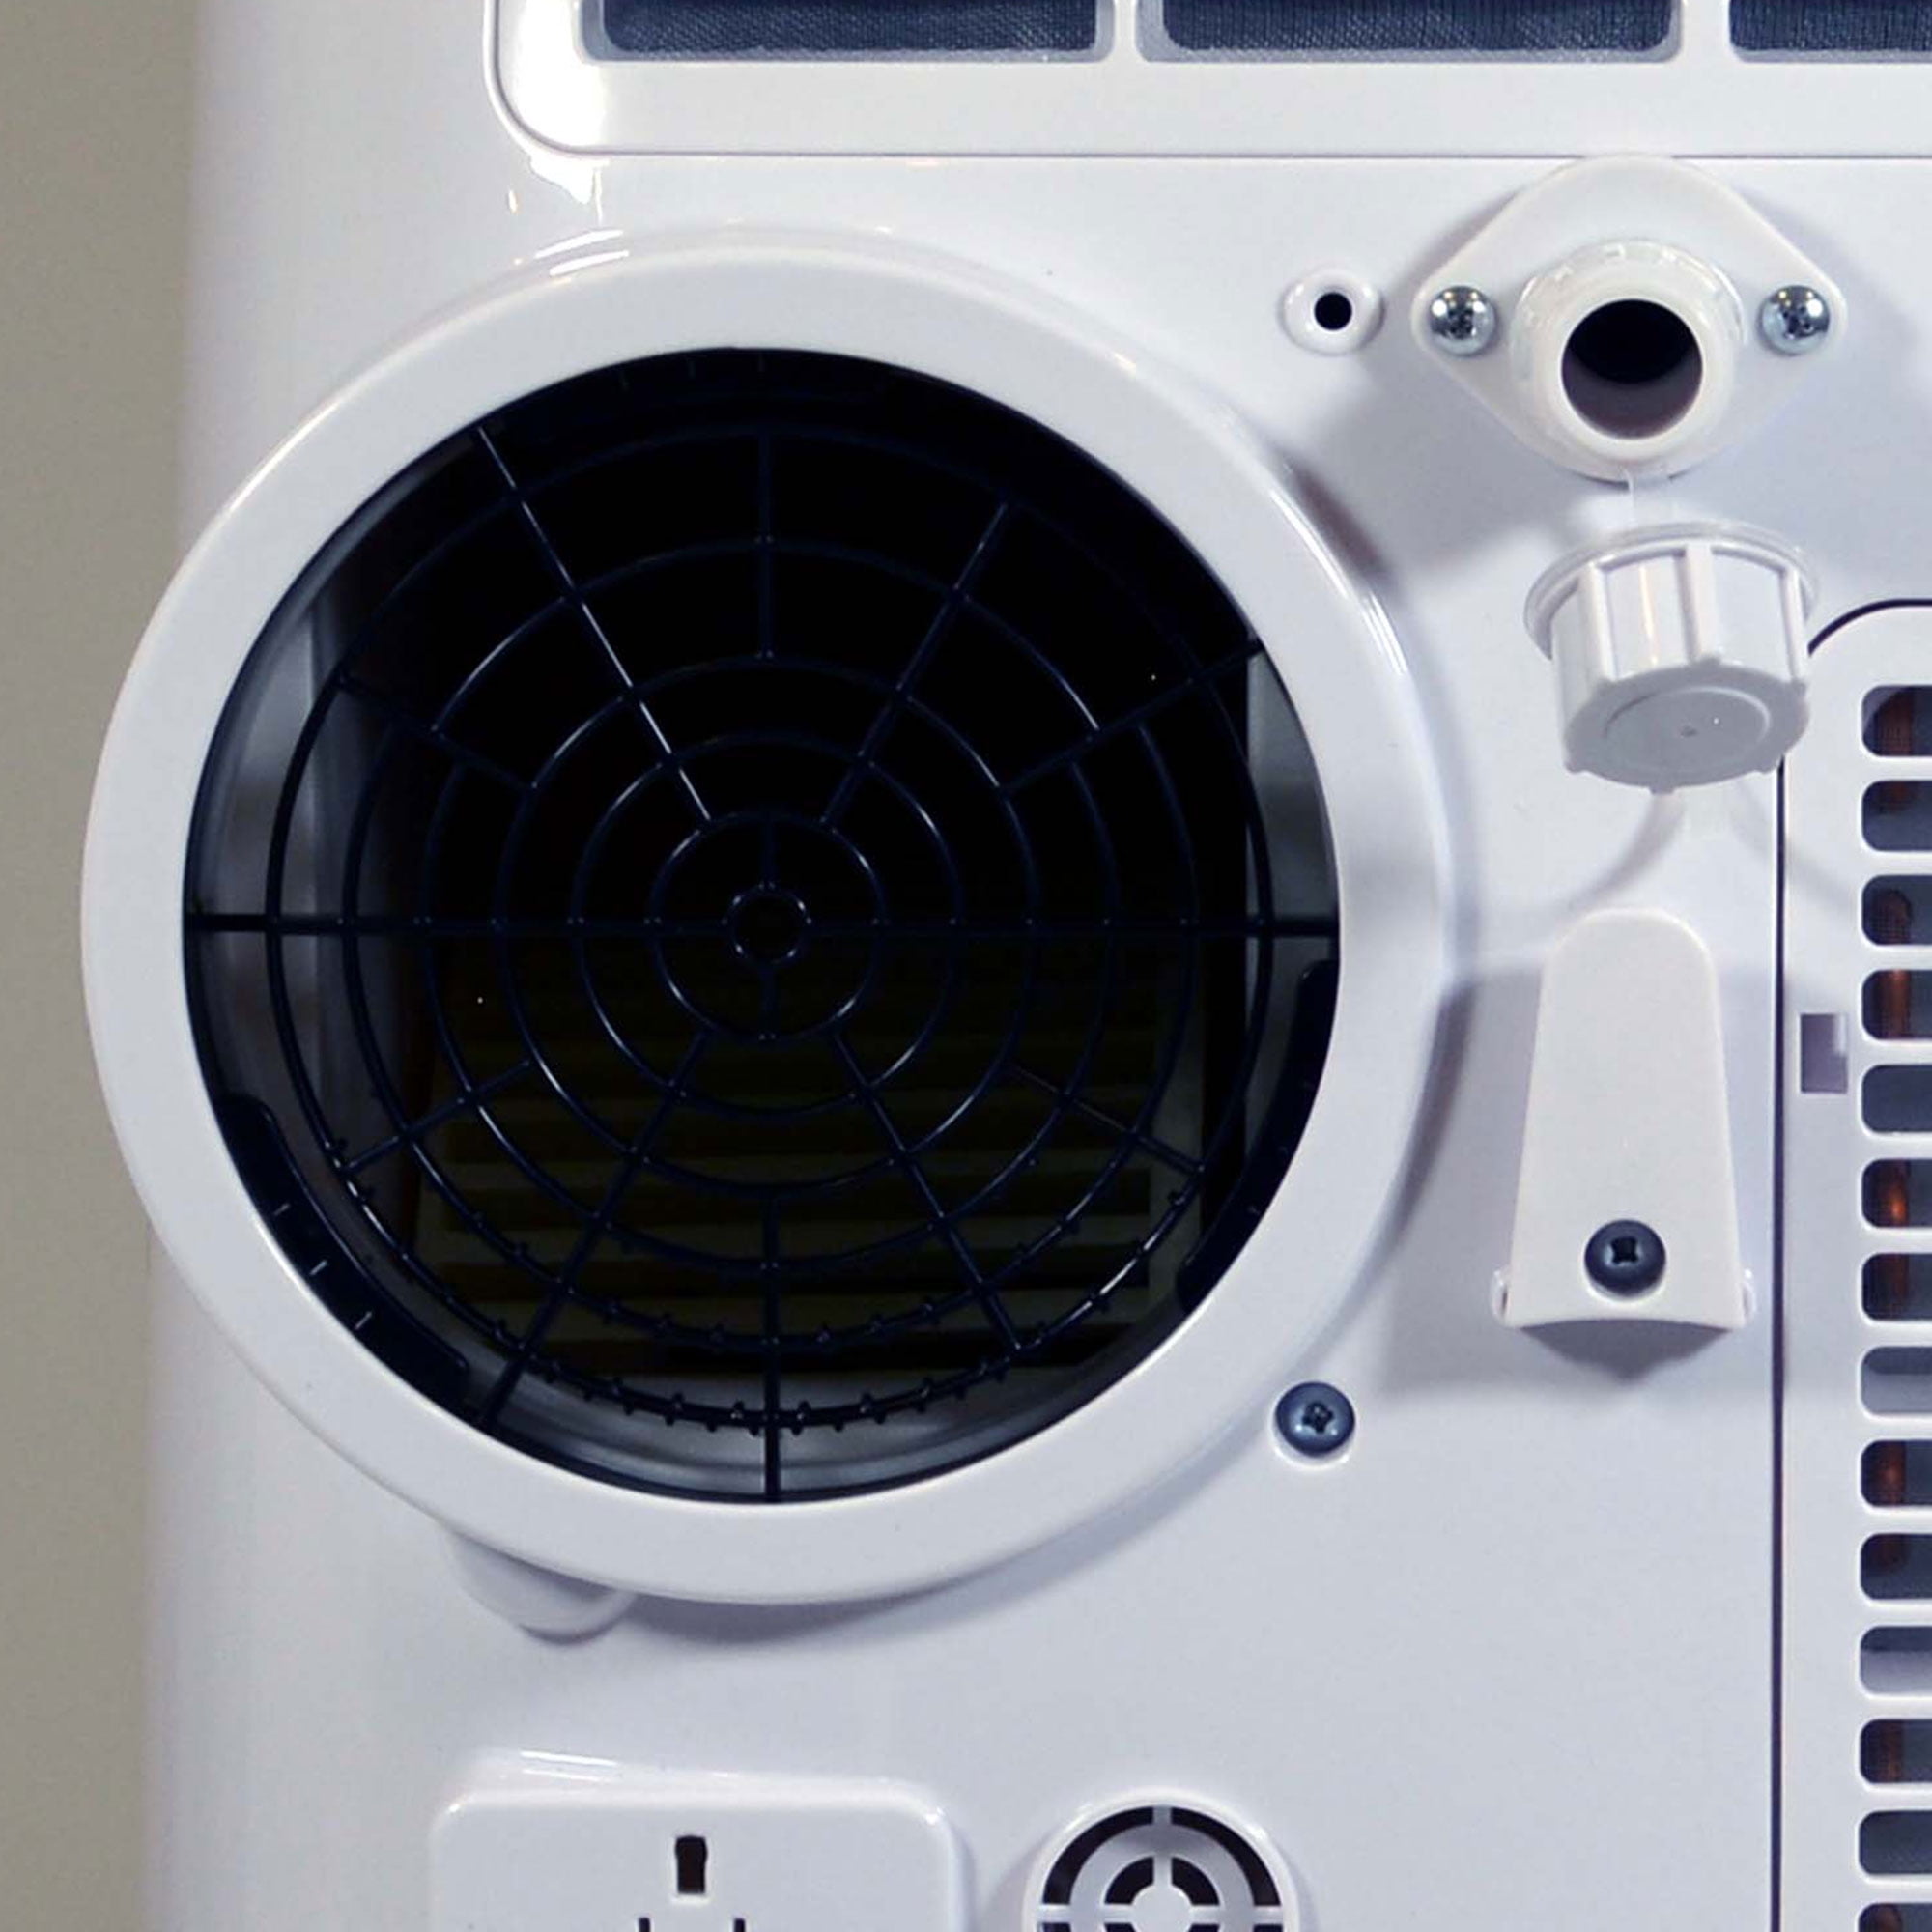 SoleusAir 12,000 BTU Portable Air Conditioner, Dehumidifier, & Fan 